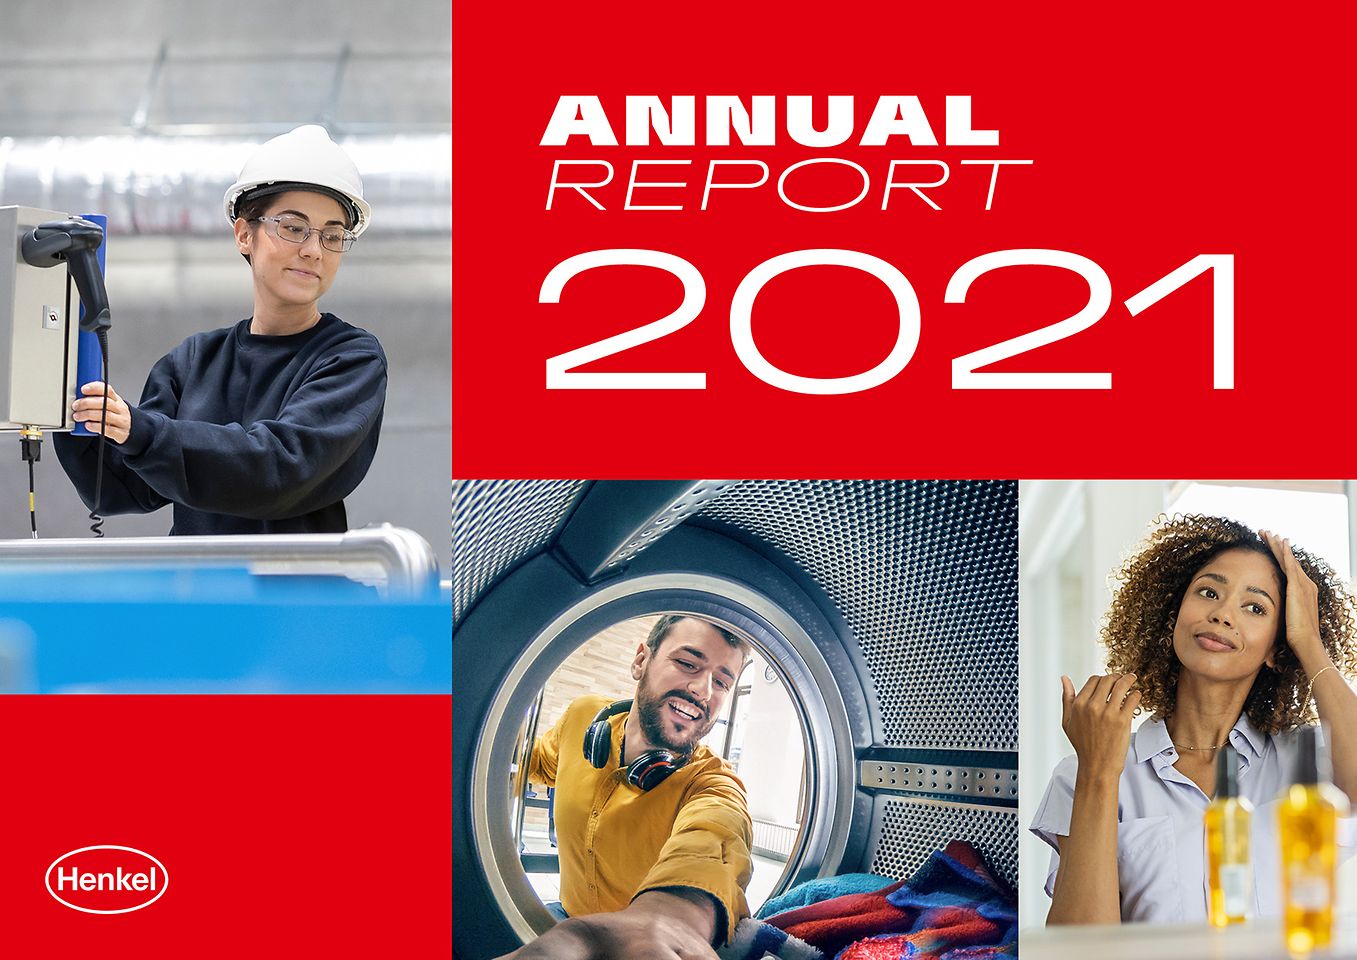 Reporte Anual 2021 (Capa)